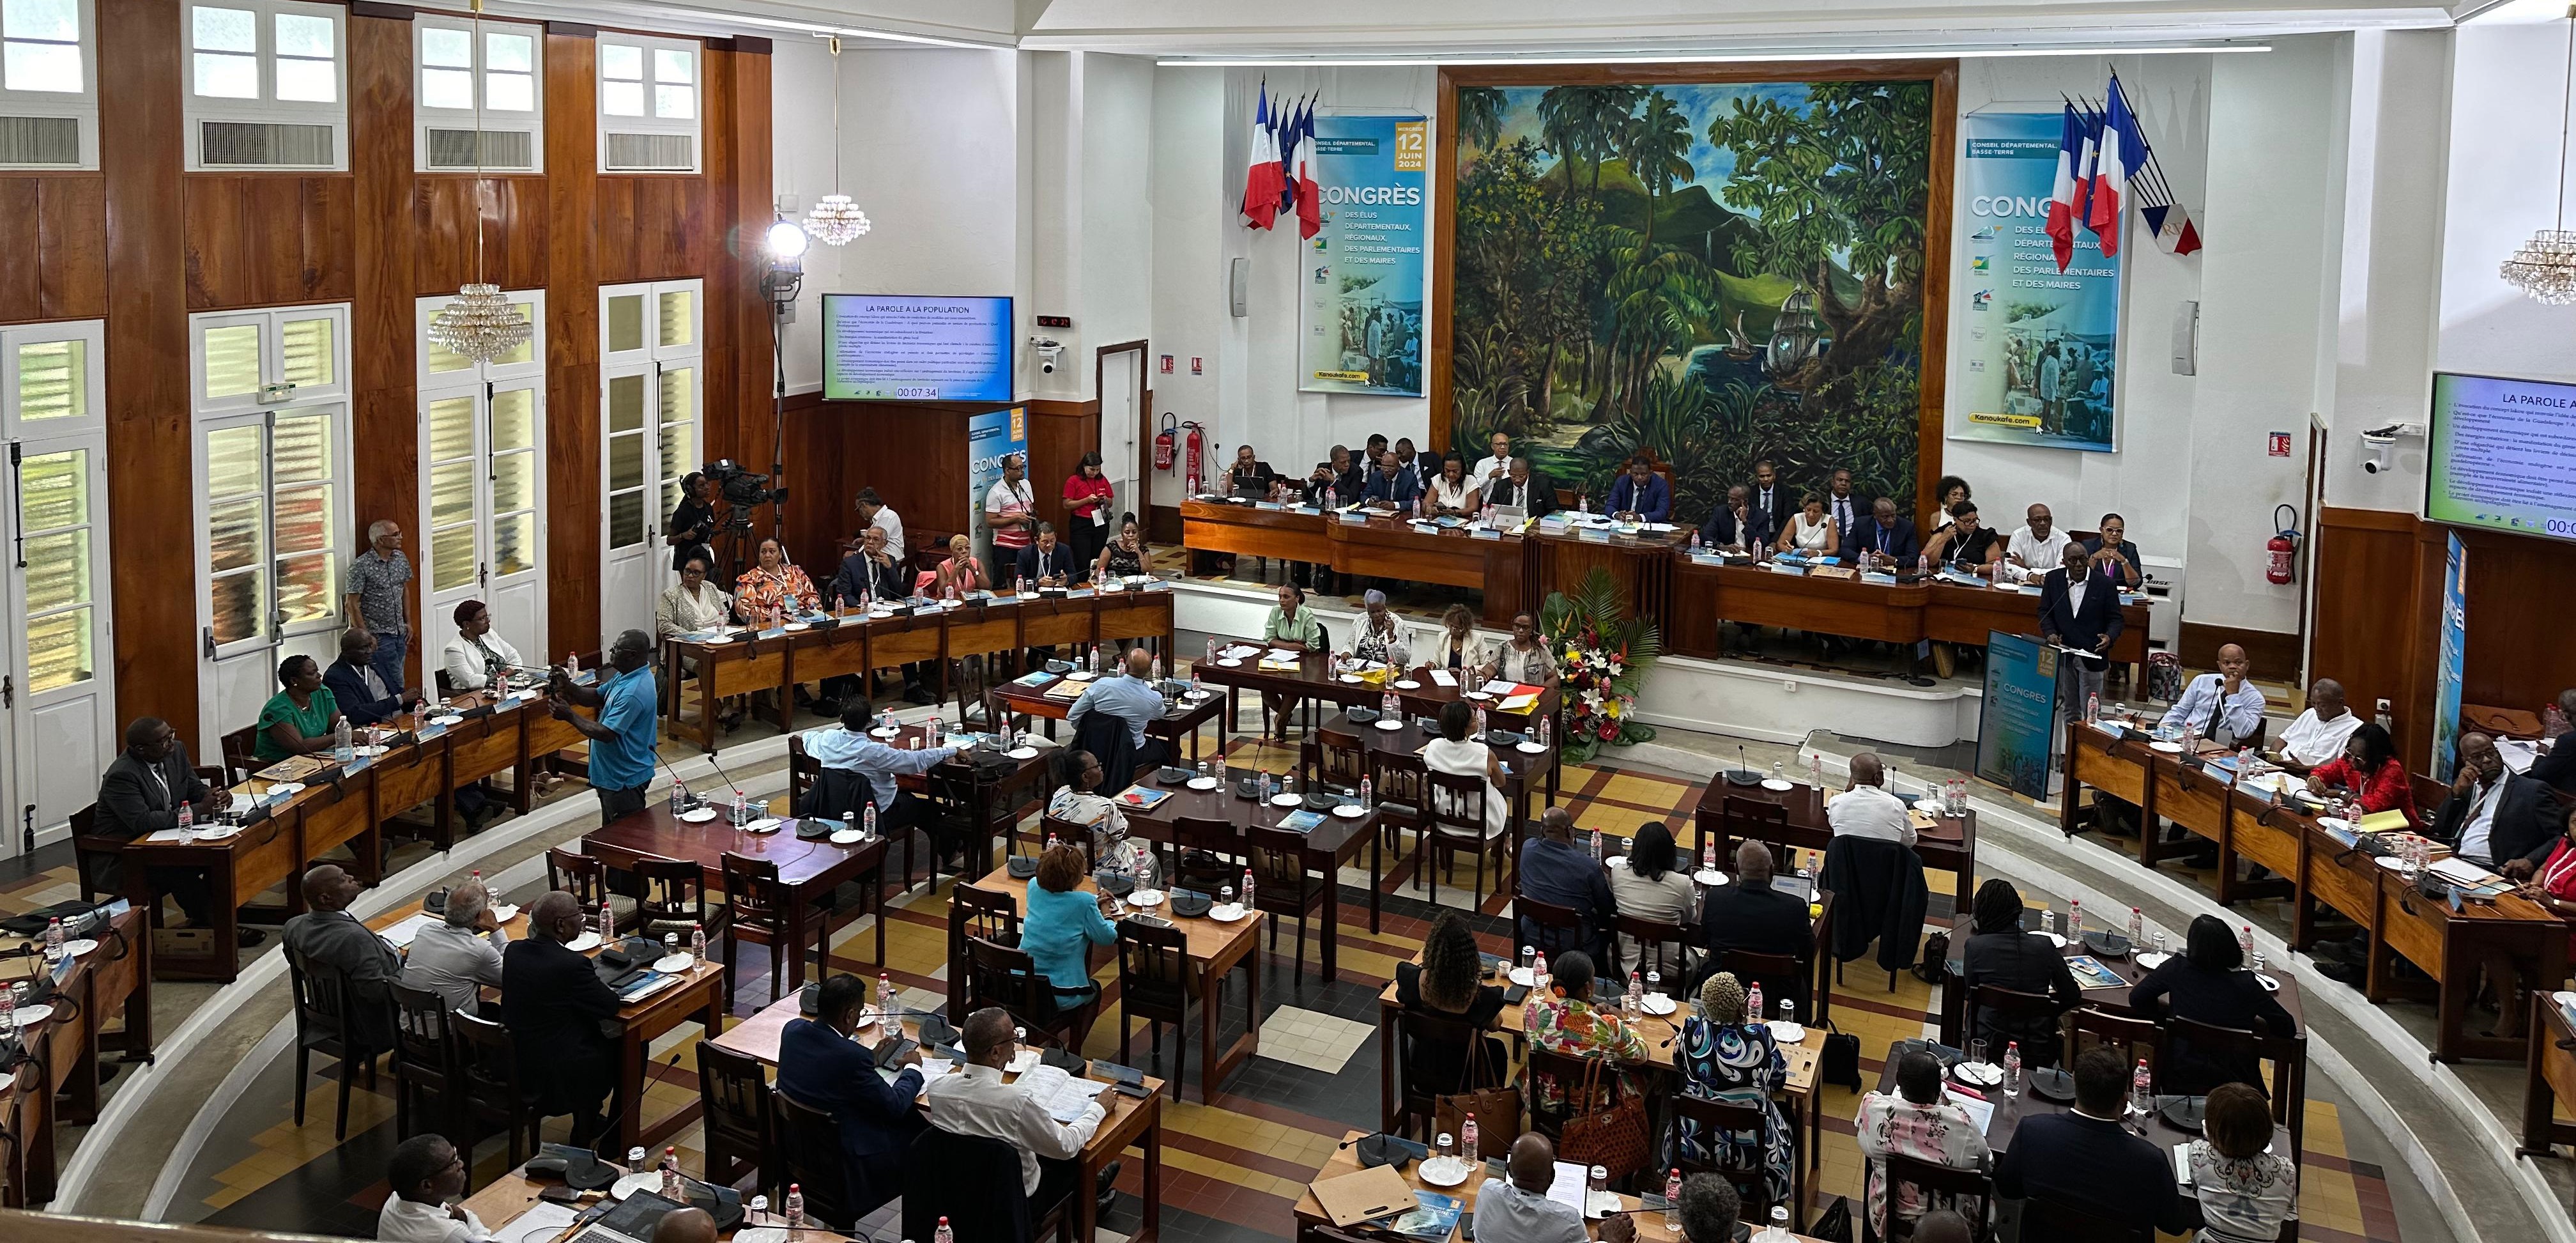     Retour sur le 18e Congrès des élus de Guadeloupe

